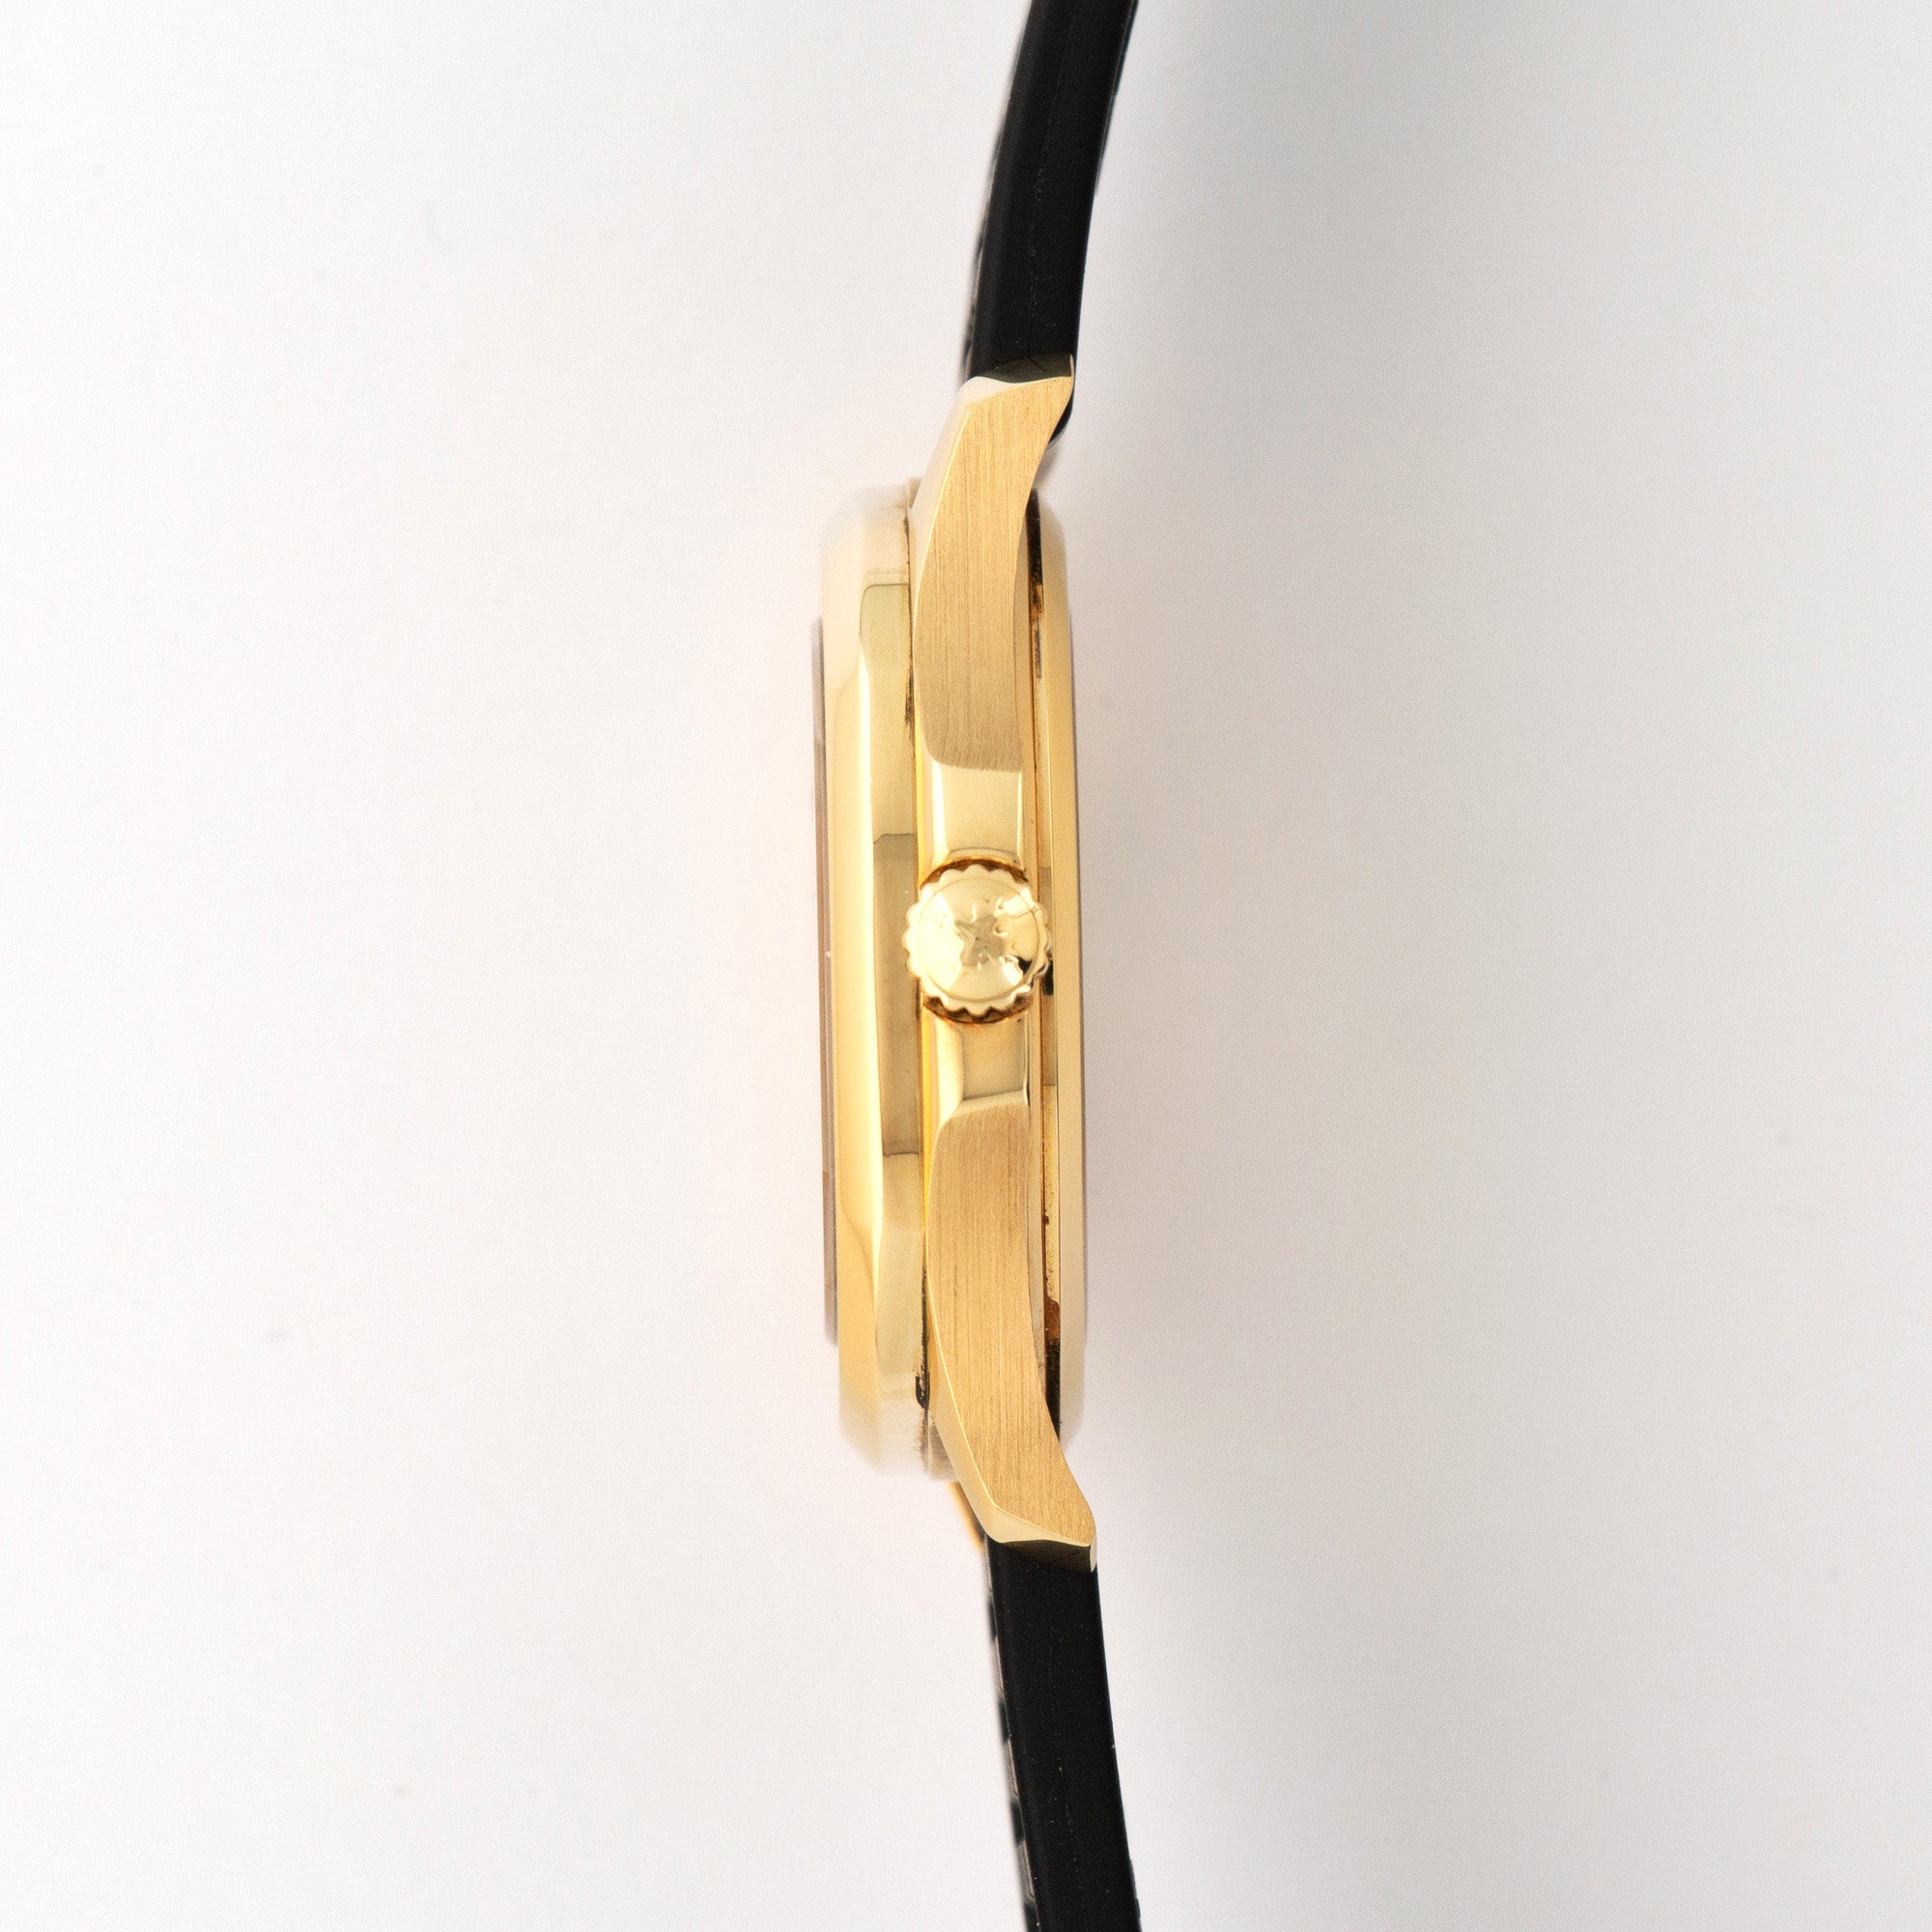 Patek Philippe - Patek Philippe Yellow Gold Aquanaut Watch Ref. 5066 - The Keystone Watches